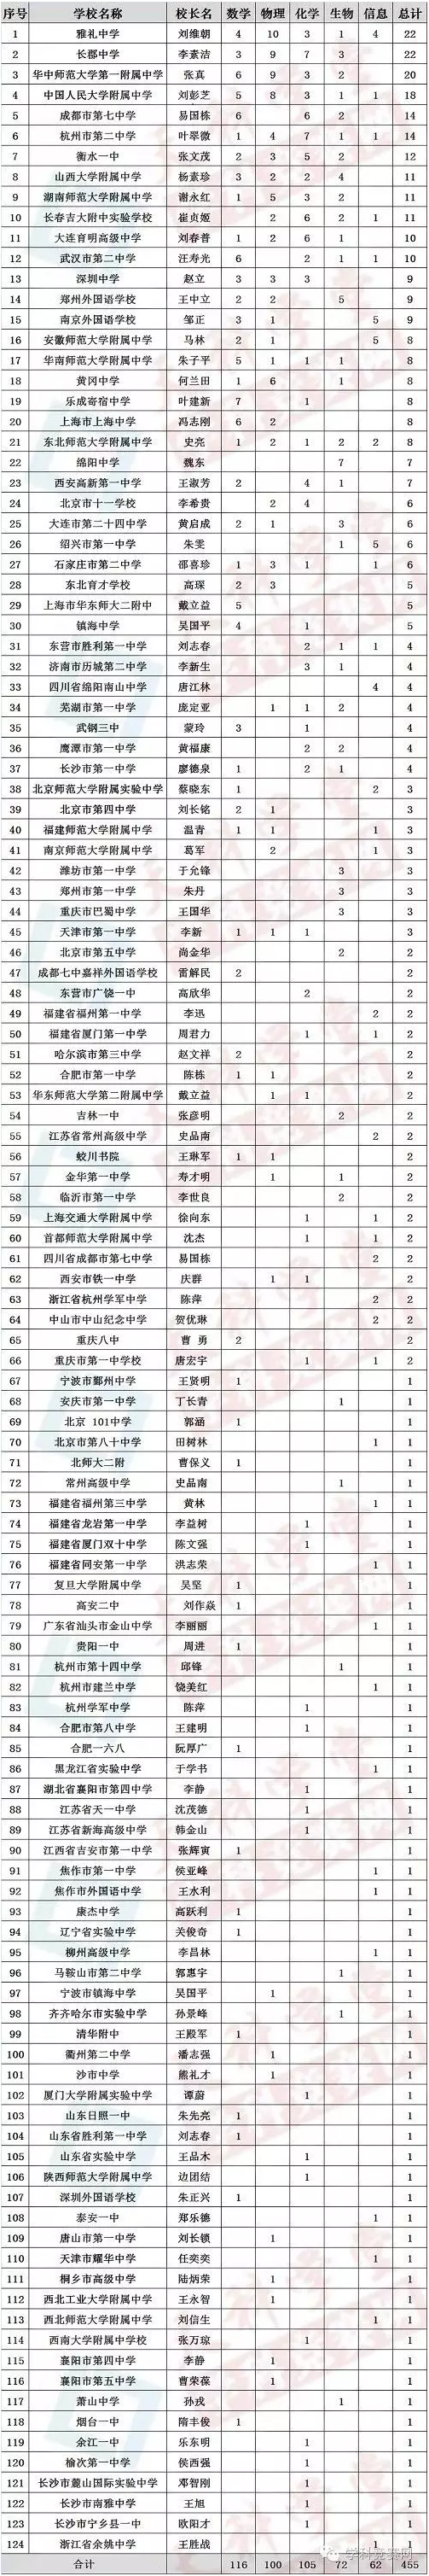 2016中国学科奥赛120强高中排行榜 长沙6所高中上榜